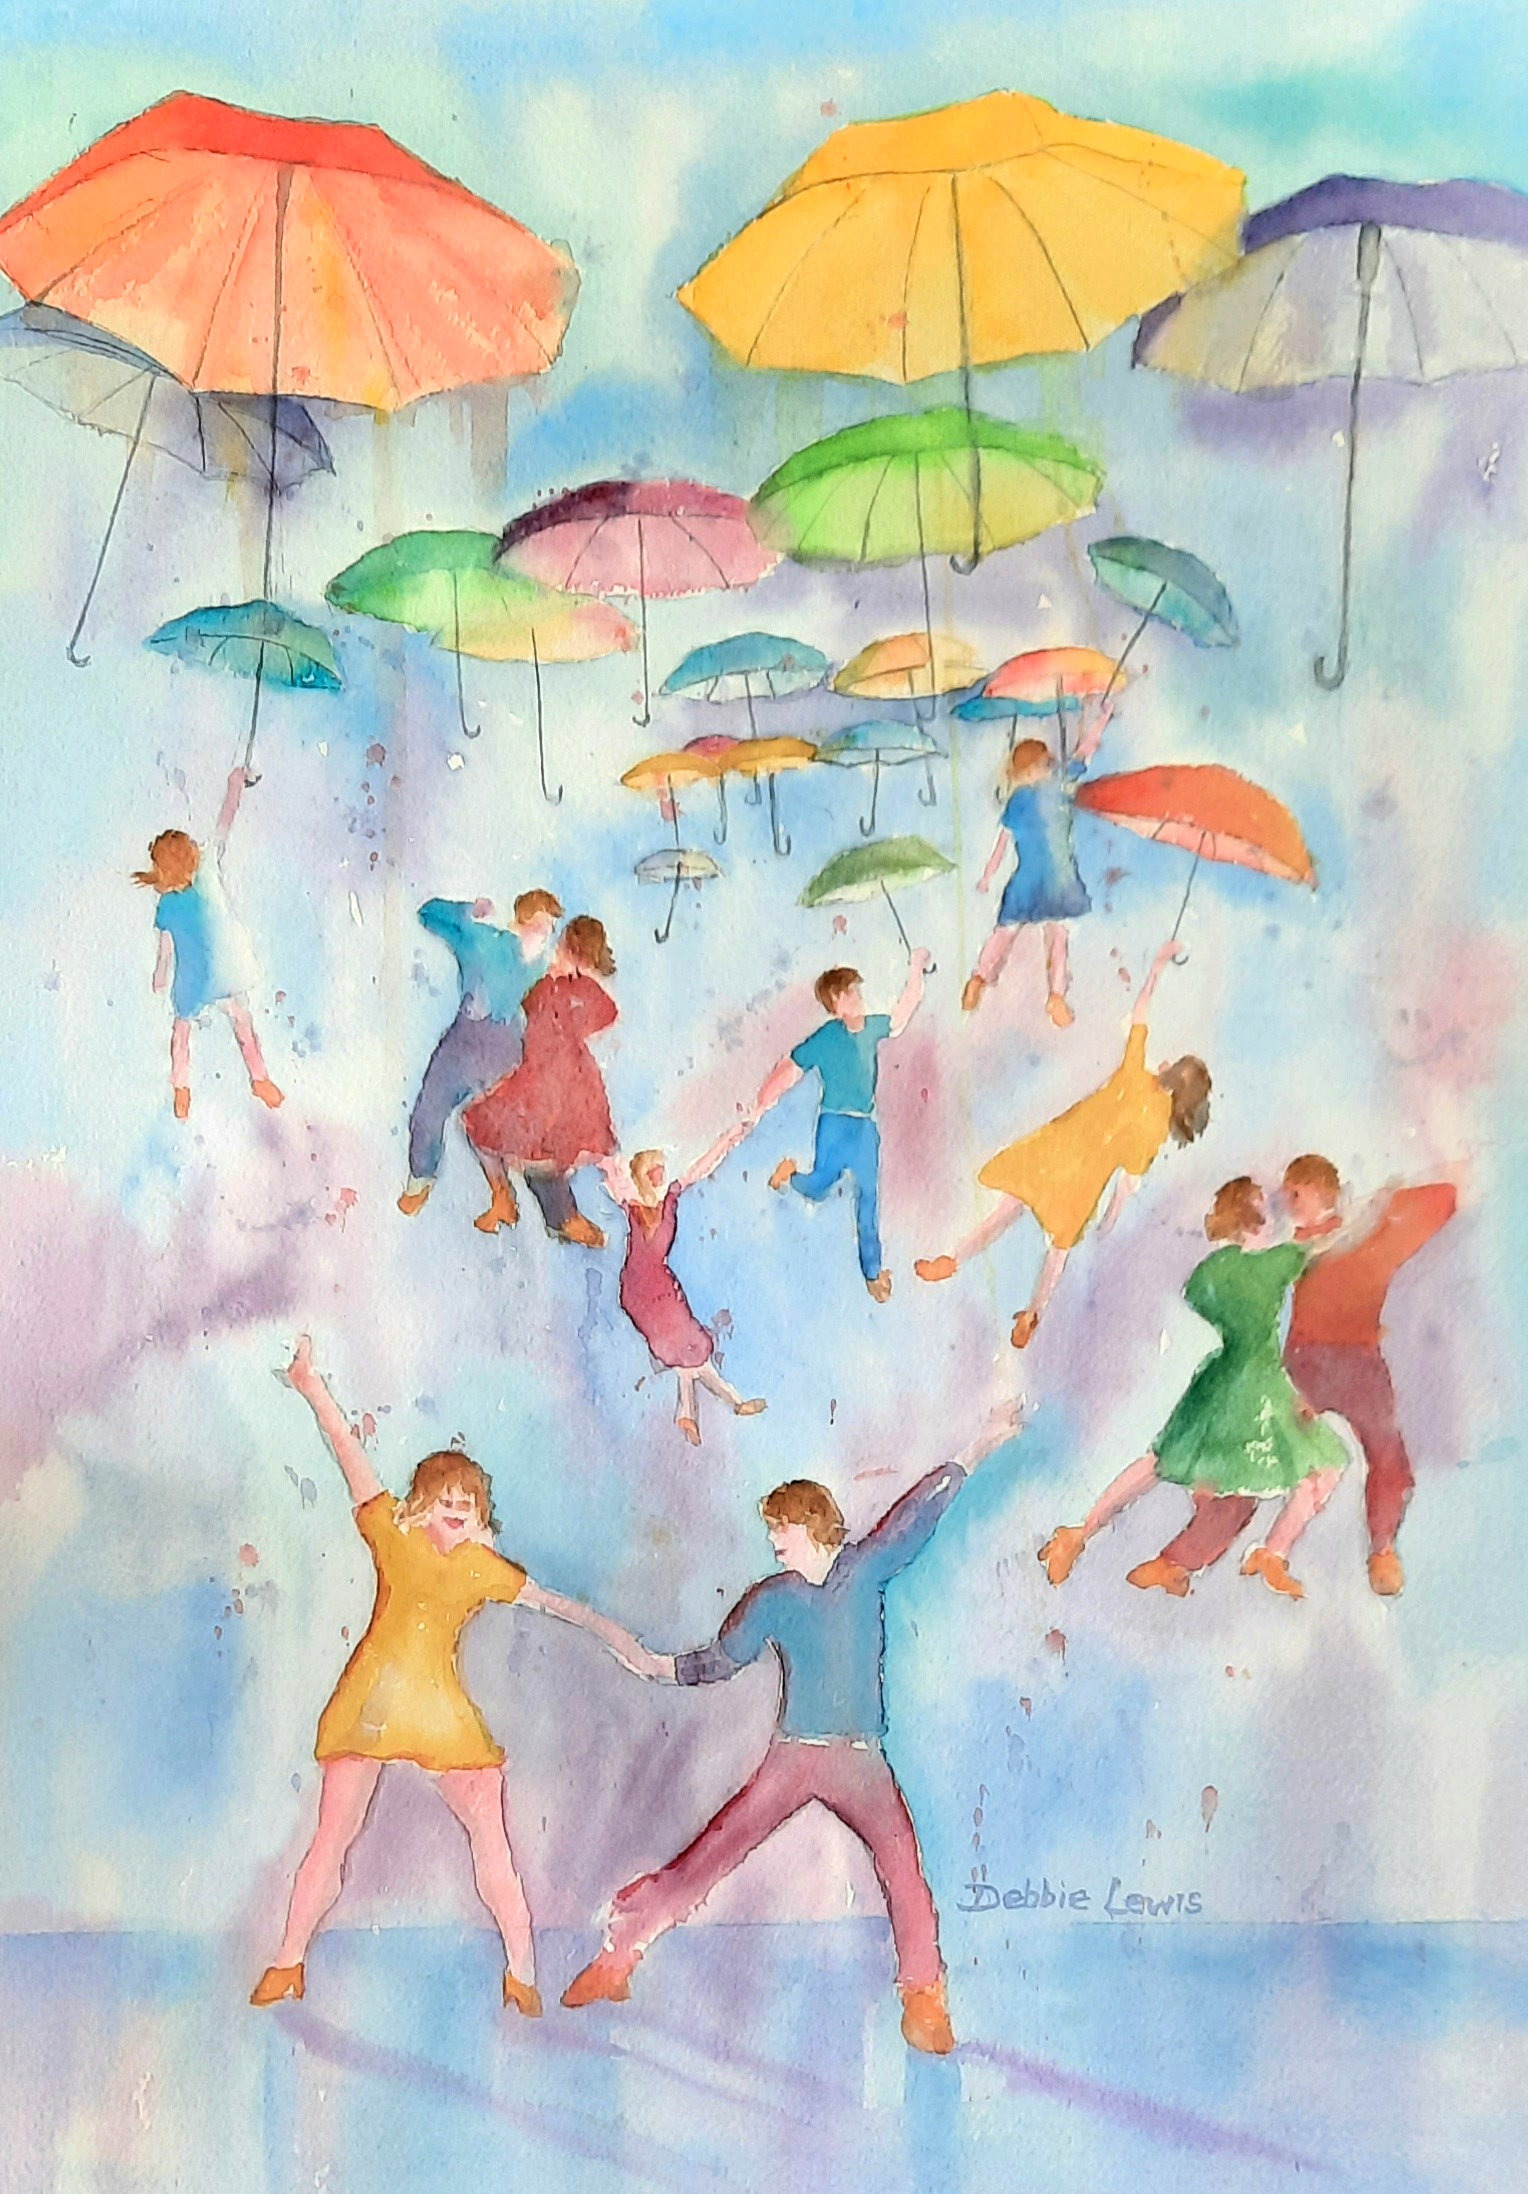 Dancing in the rain or shine sqsyll